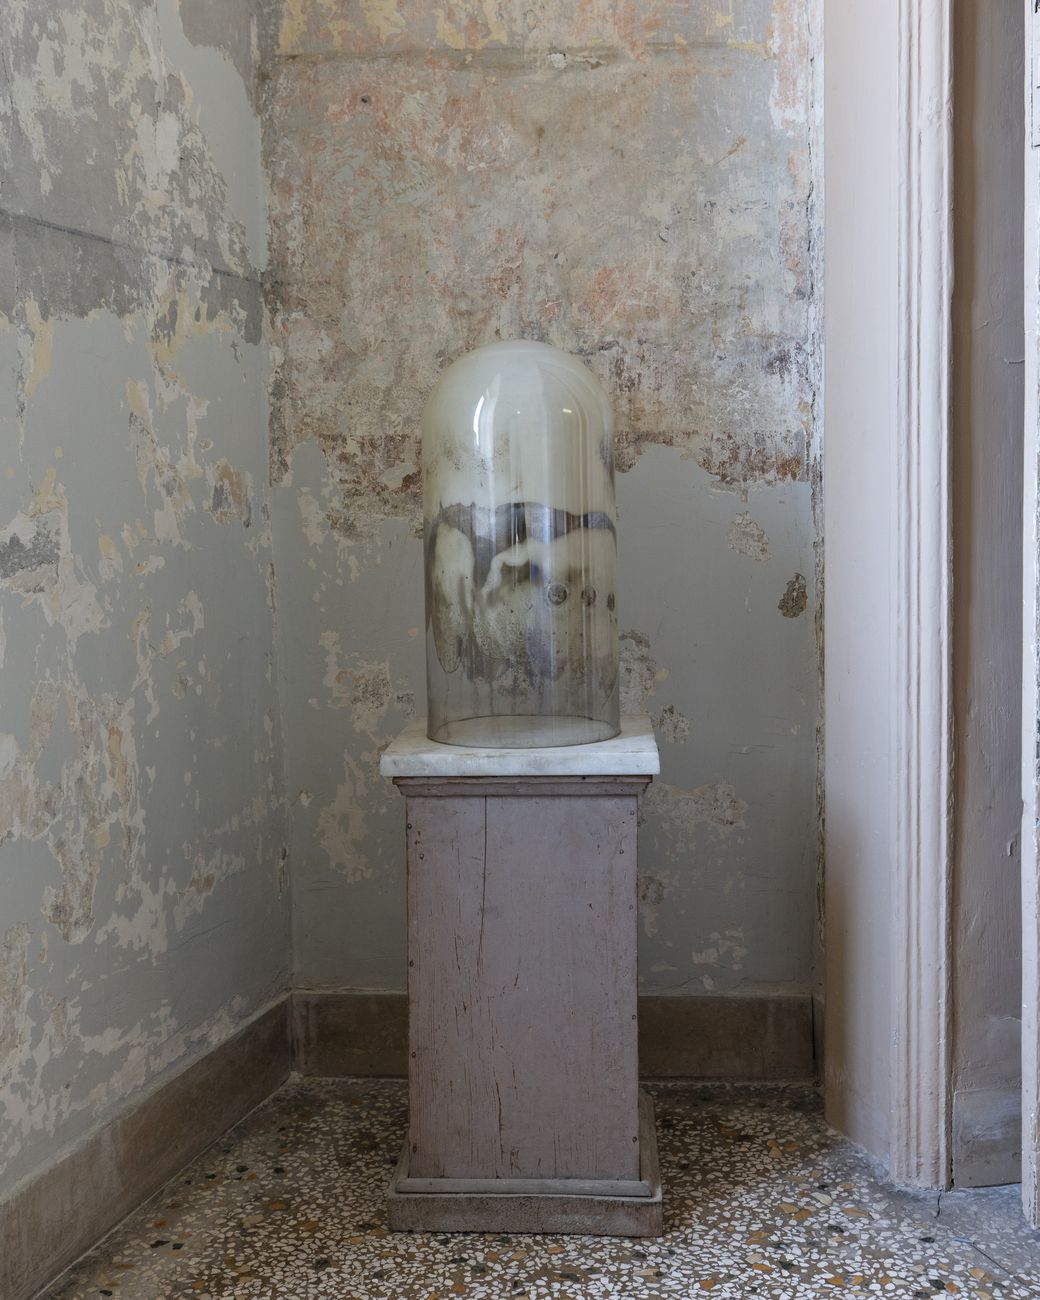 Hélène Fauquet, Untitled, 2018. Lo spazio esistenziale. Definizione #2. Installation view at Fondazione Morra, Napoli 2019. Photo Amedeo Benestante